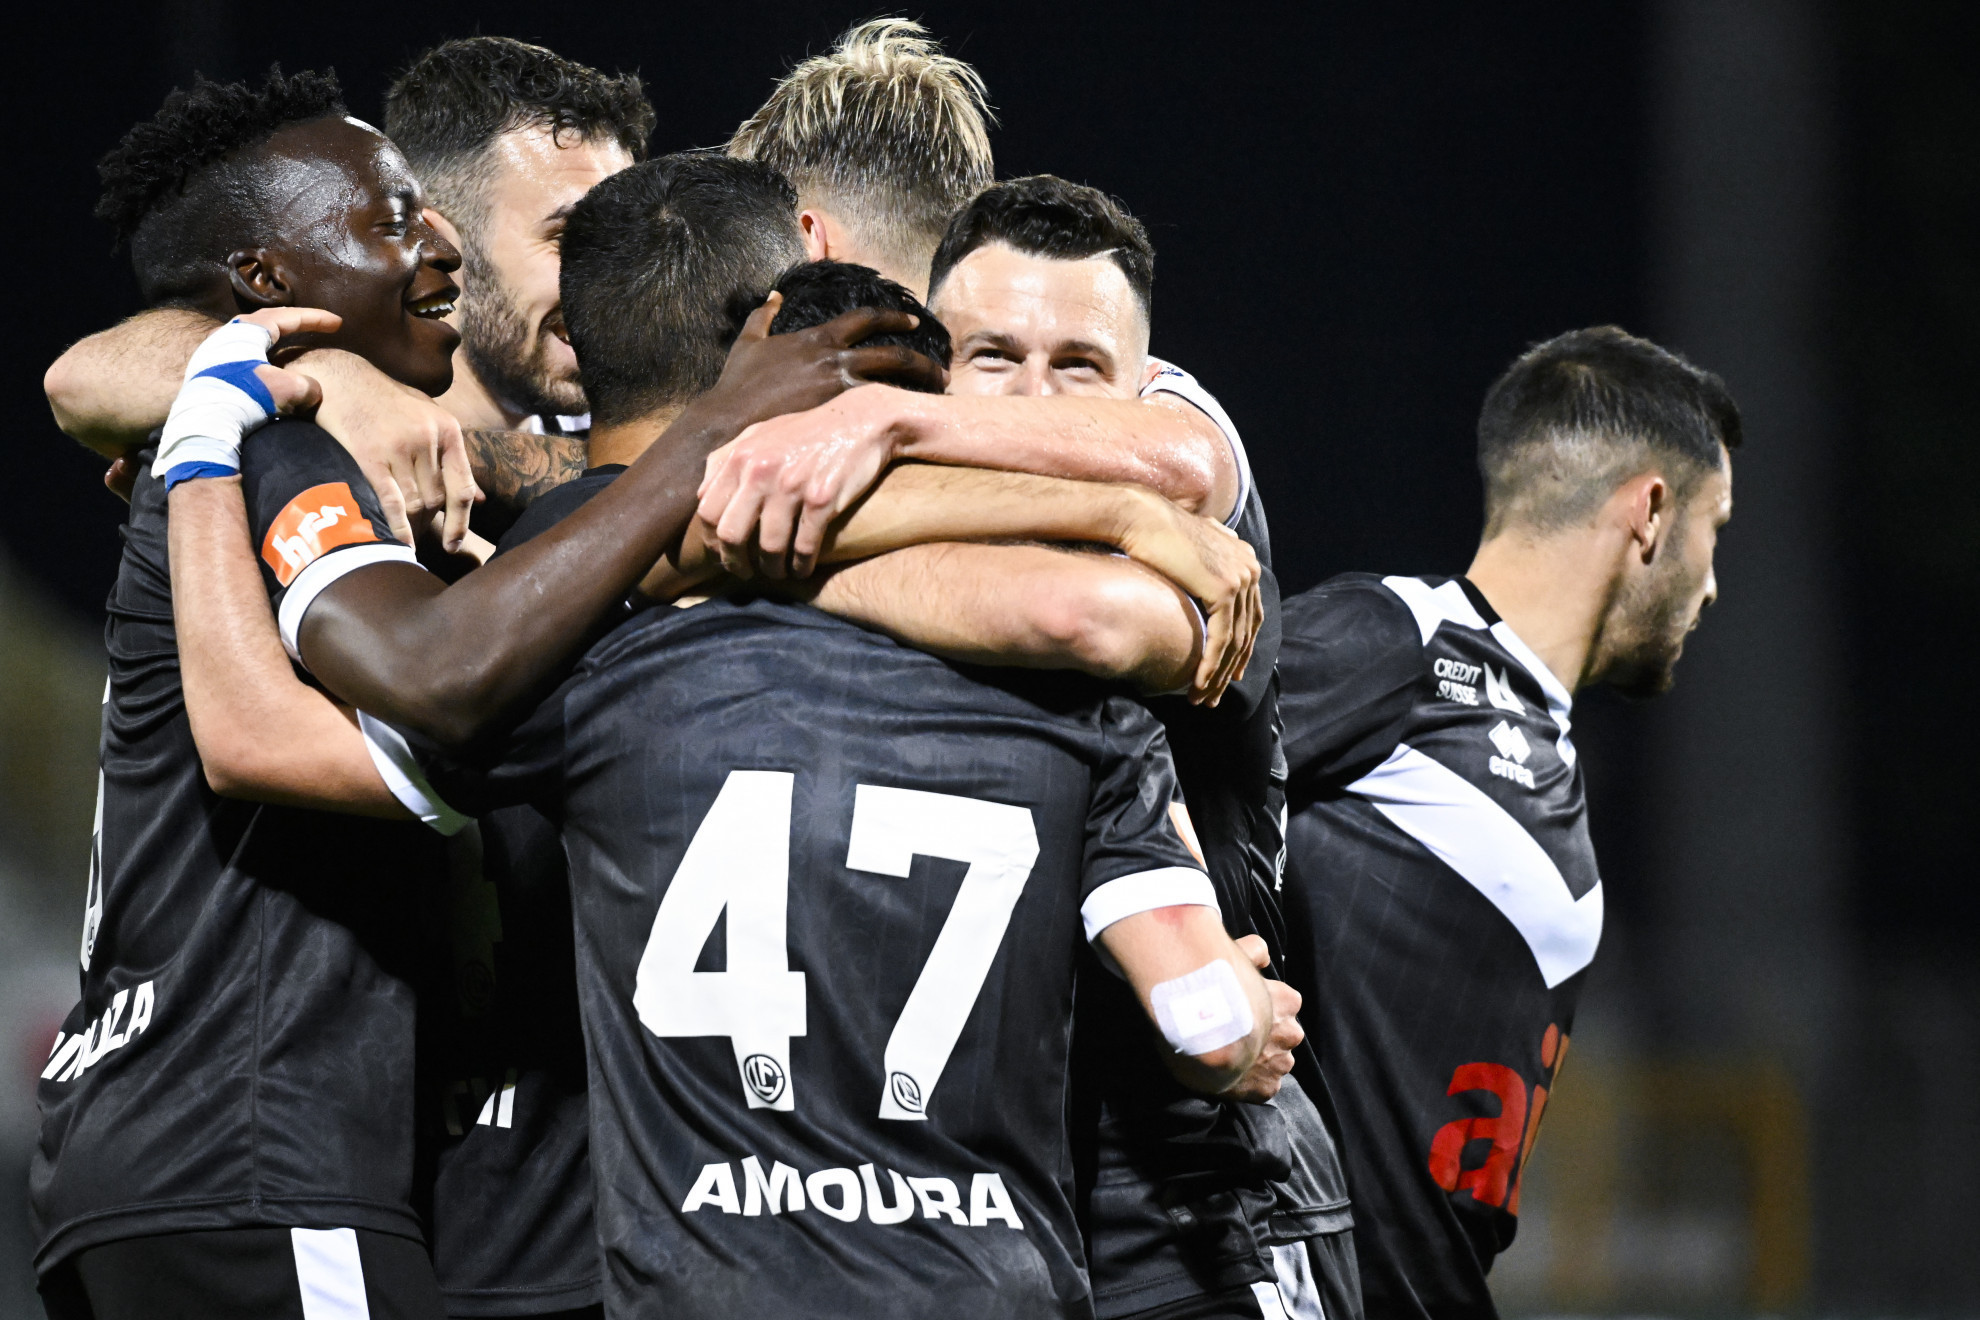 Dodici vittorie in 24 partite! - FC Lugano